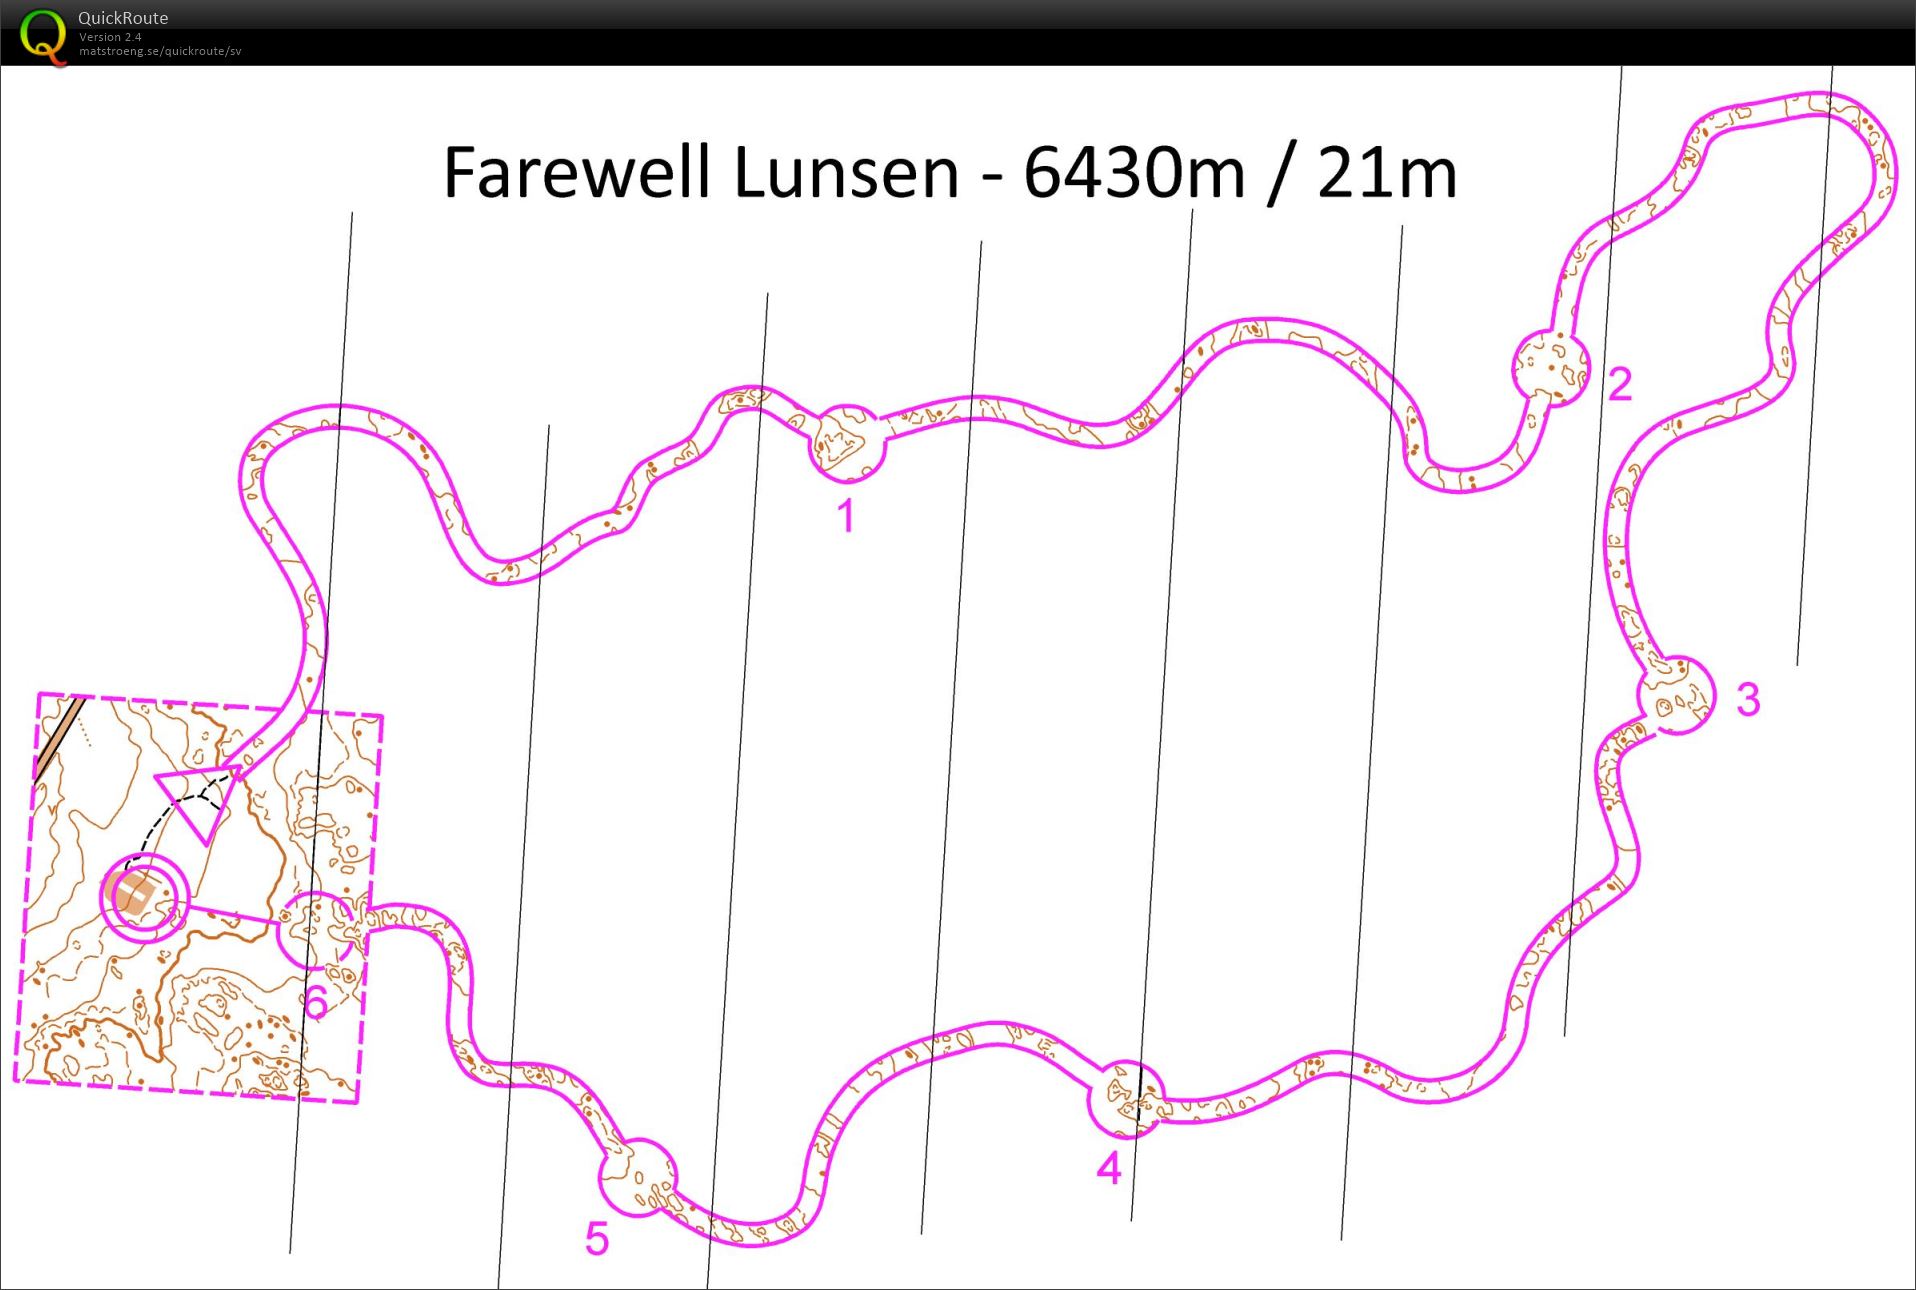 Farewell Lunsen (2015-12-26)